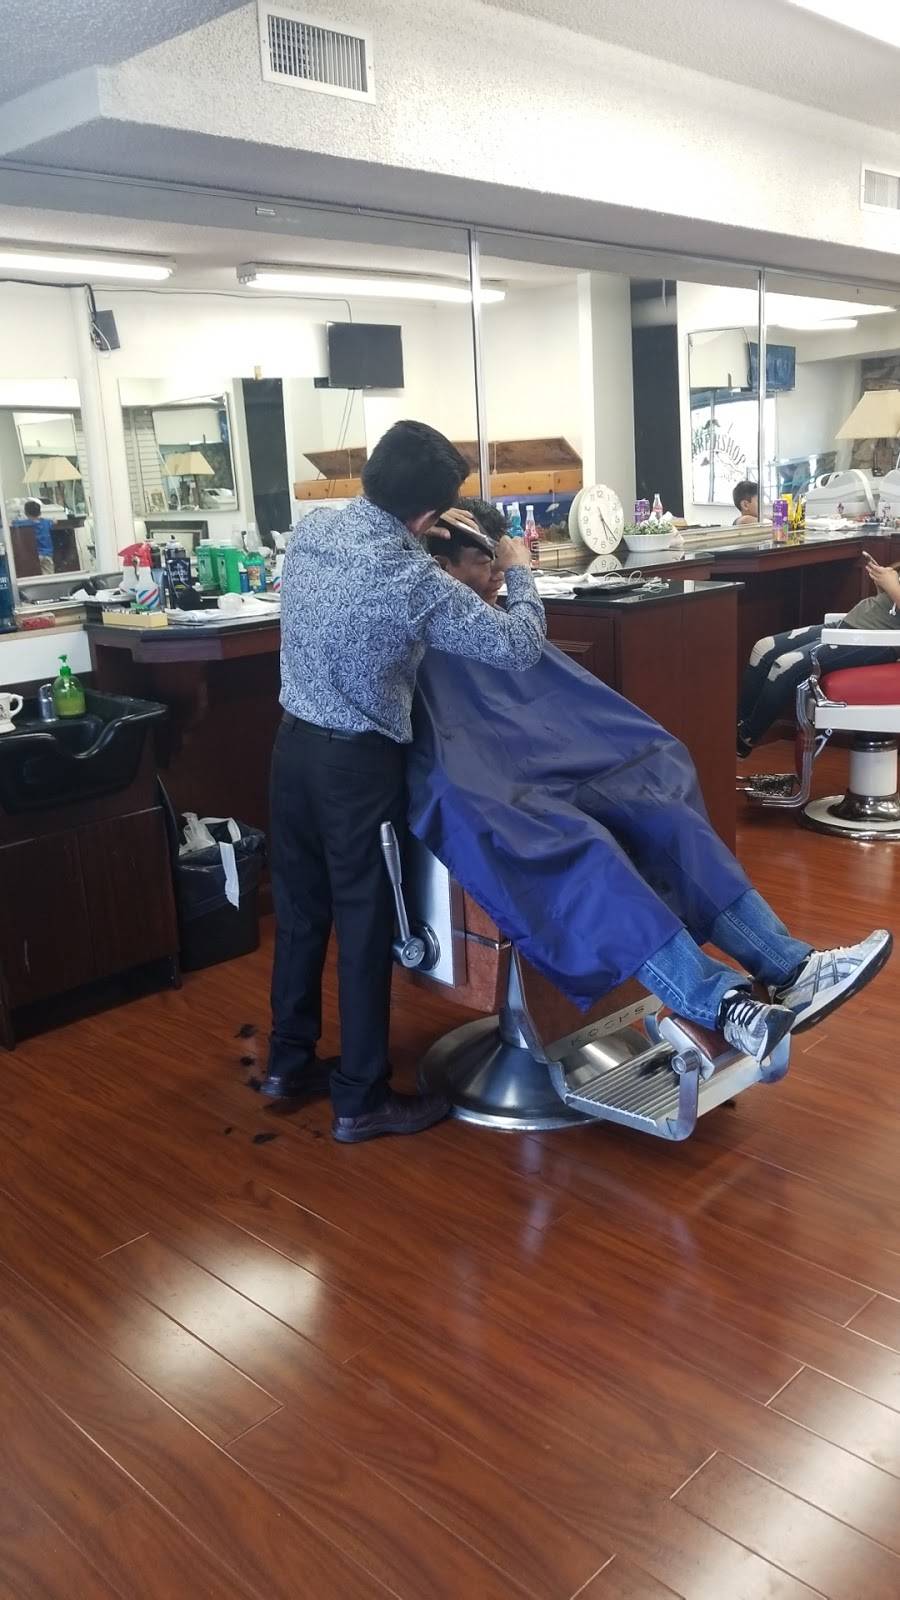 Alfredos Barber Shop | 11047 Balboa Blvd, Granada Hills, CA 91344 | Phone: (818) 923-5335